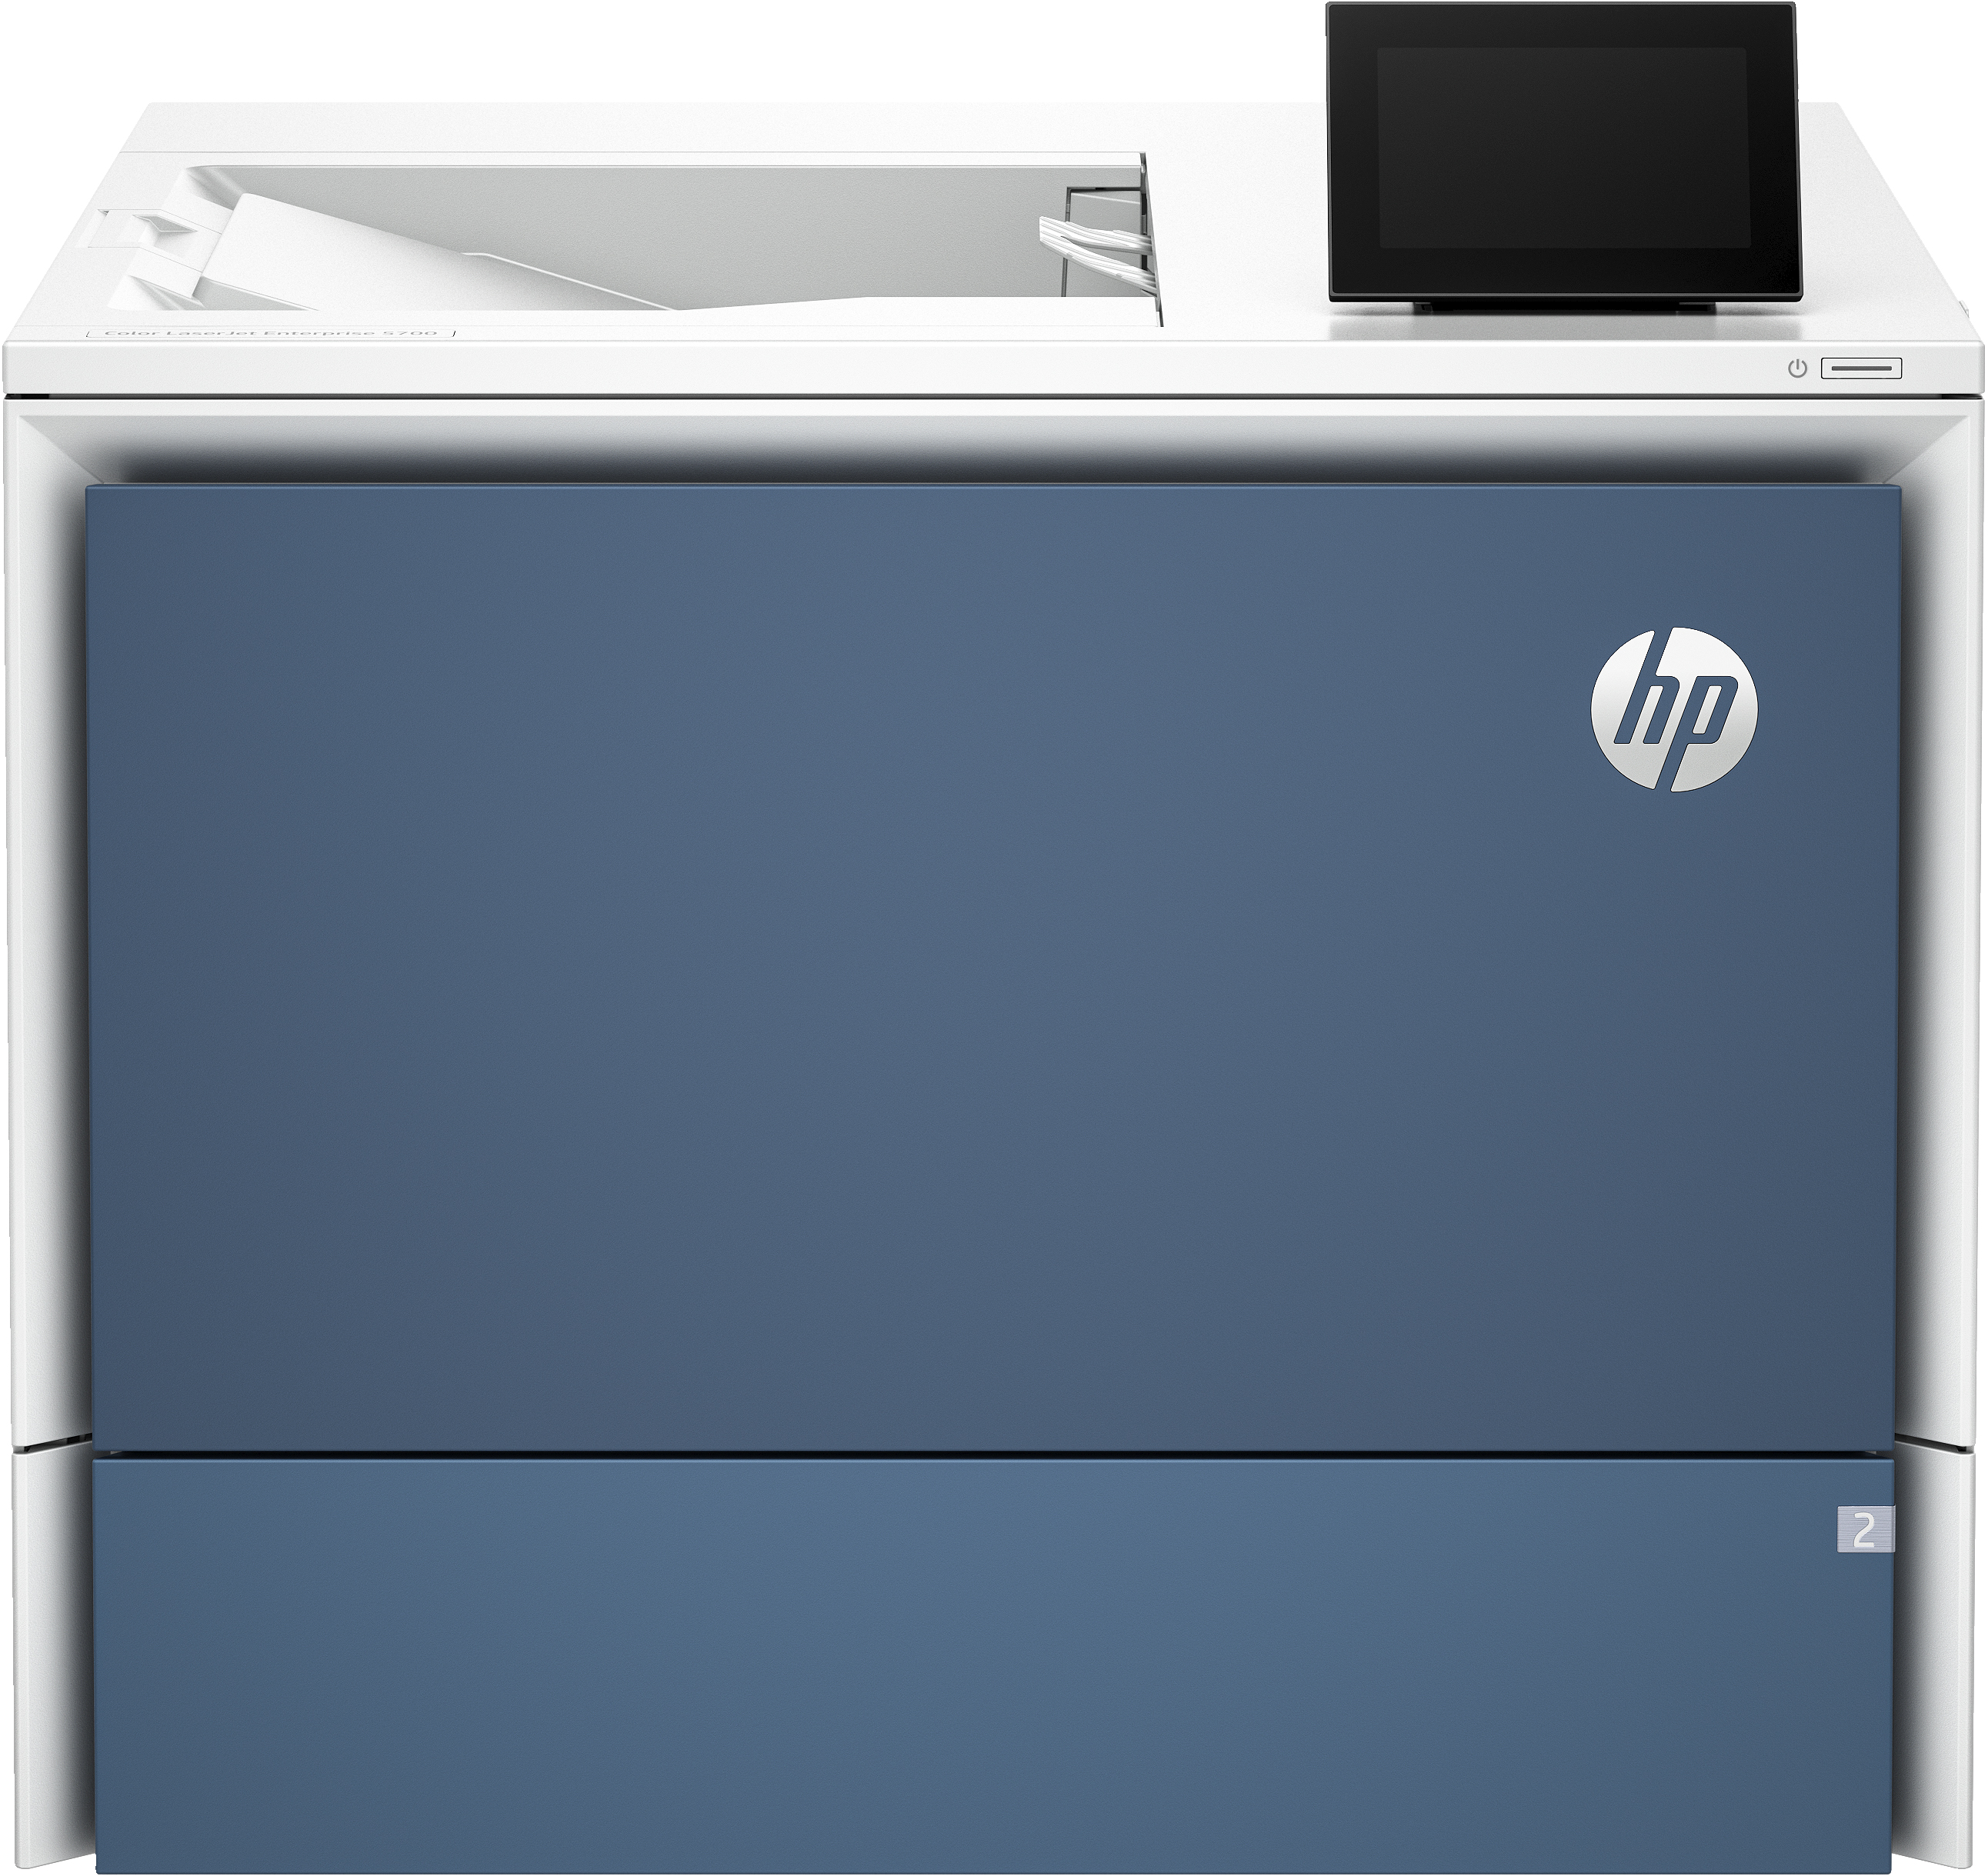 Image of HP Color LaserJet Enterprise Stampante 5700dn, Color, Stampante per Stampa, porta unità flash USB anteriore; Vassoi ad alta capacità opzionali; touchscreen; Cartuccia TerraJet